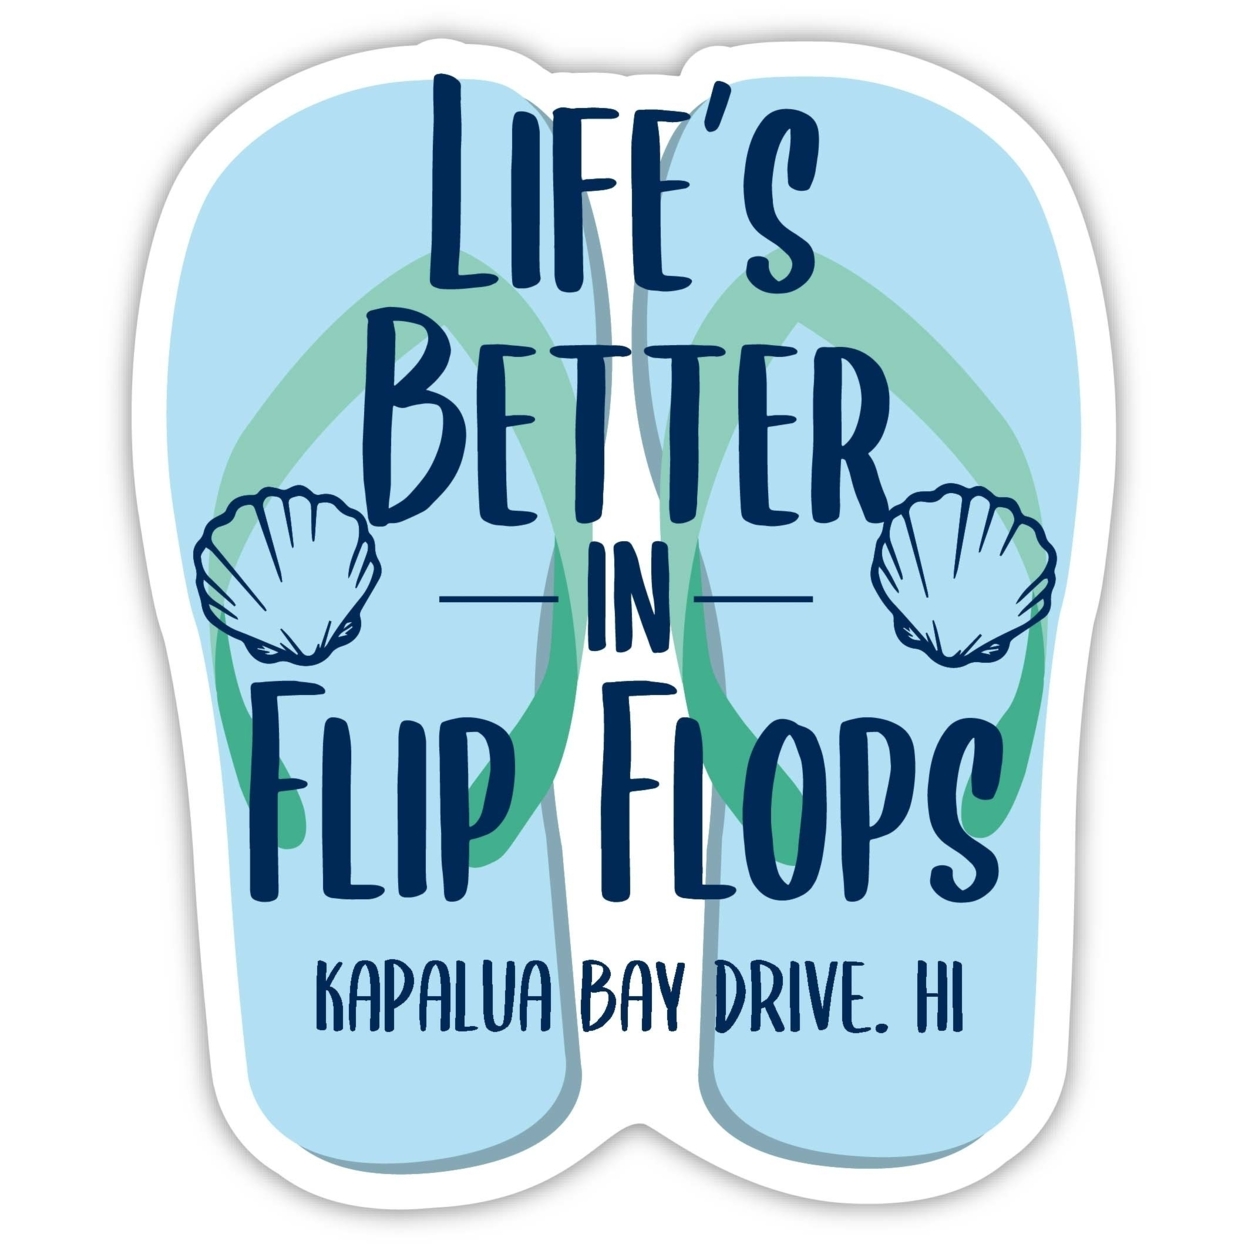 Kapalua Bay Drive Hawaii Souvenir 4 Inch Vinyl Decal Sticker Flip Flop Design